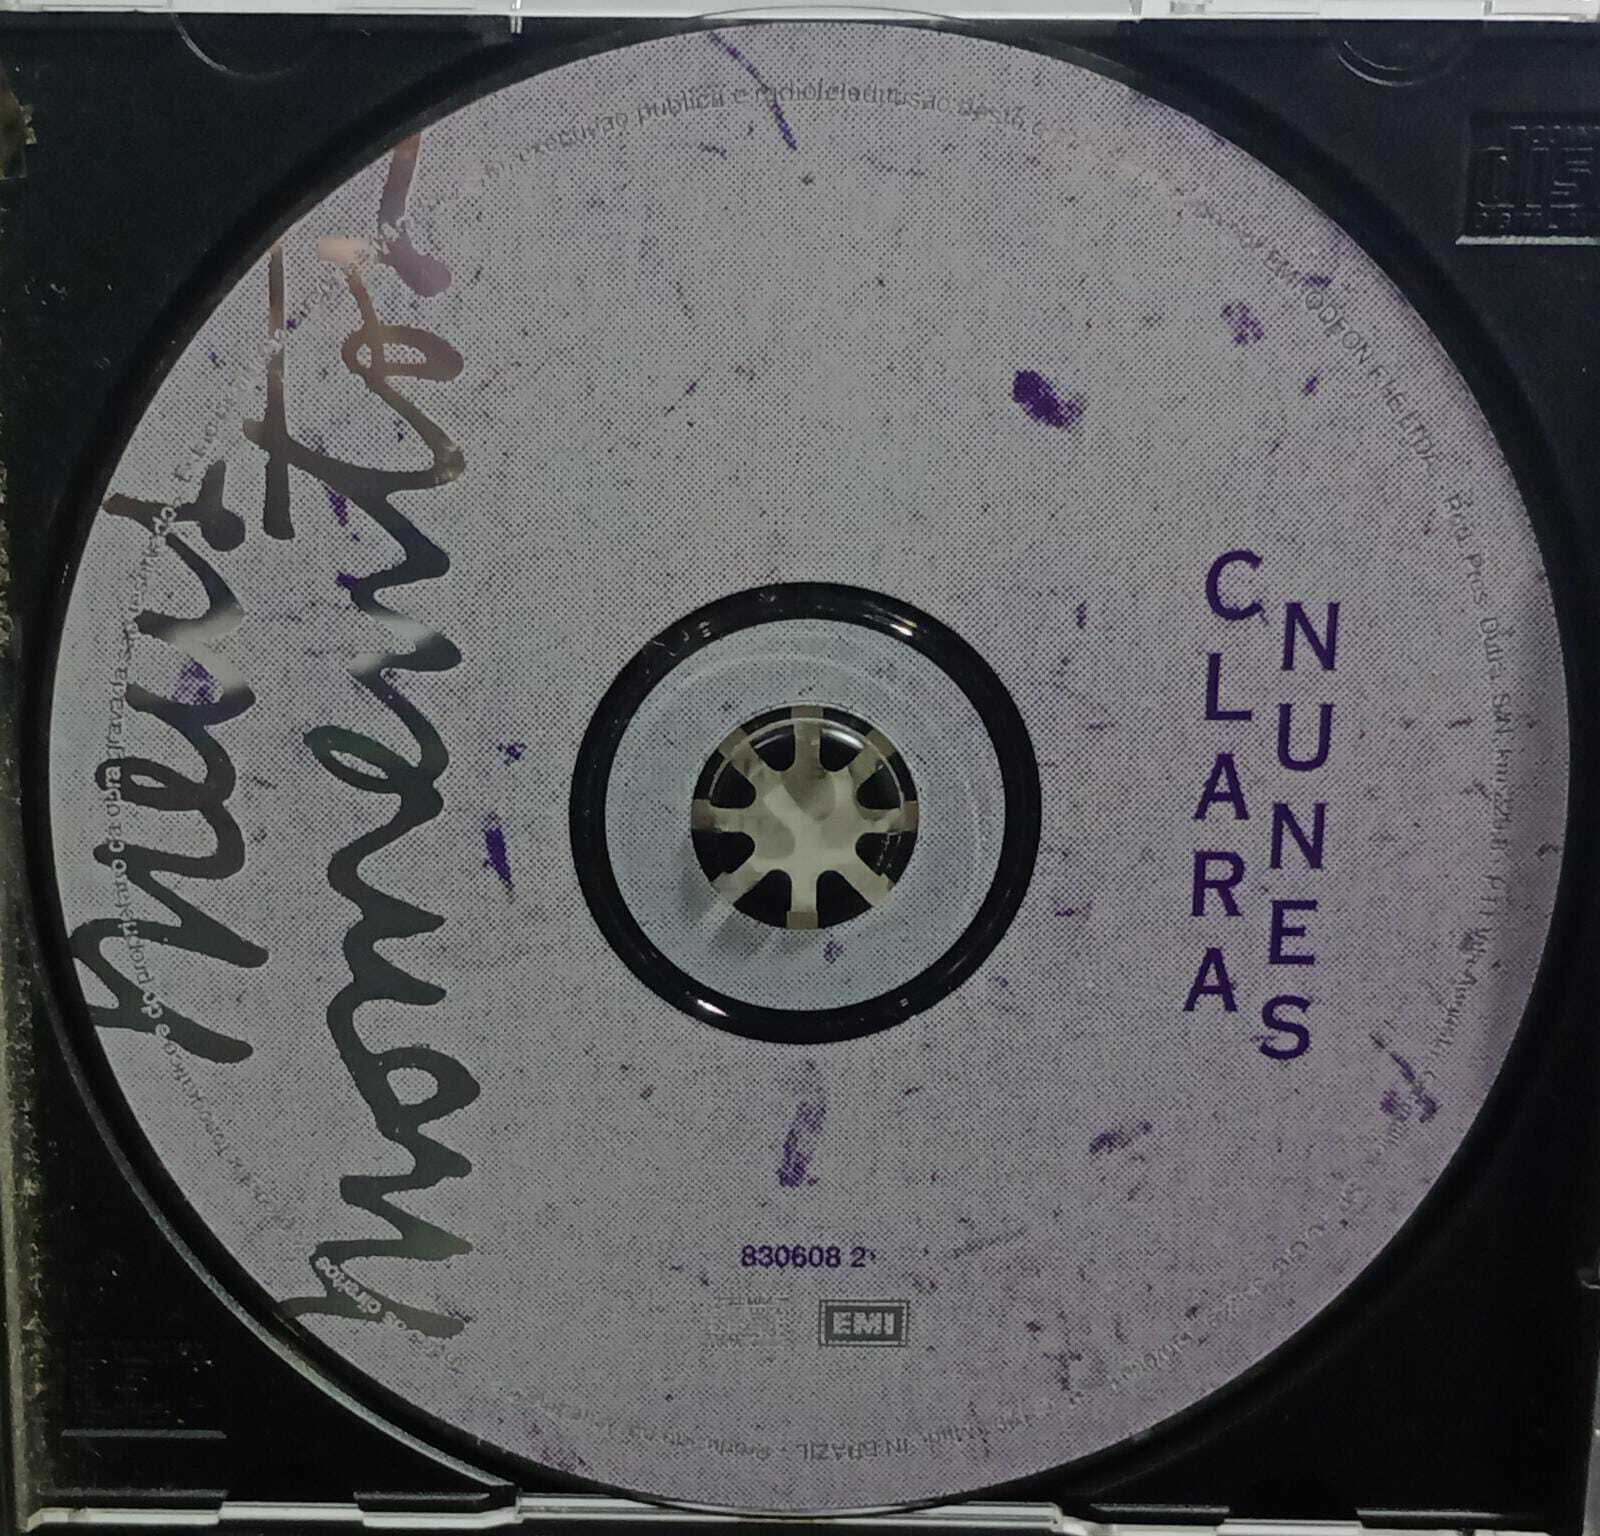 CD - Clara Nunes - Meus Momentos